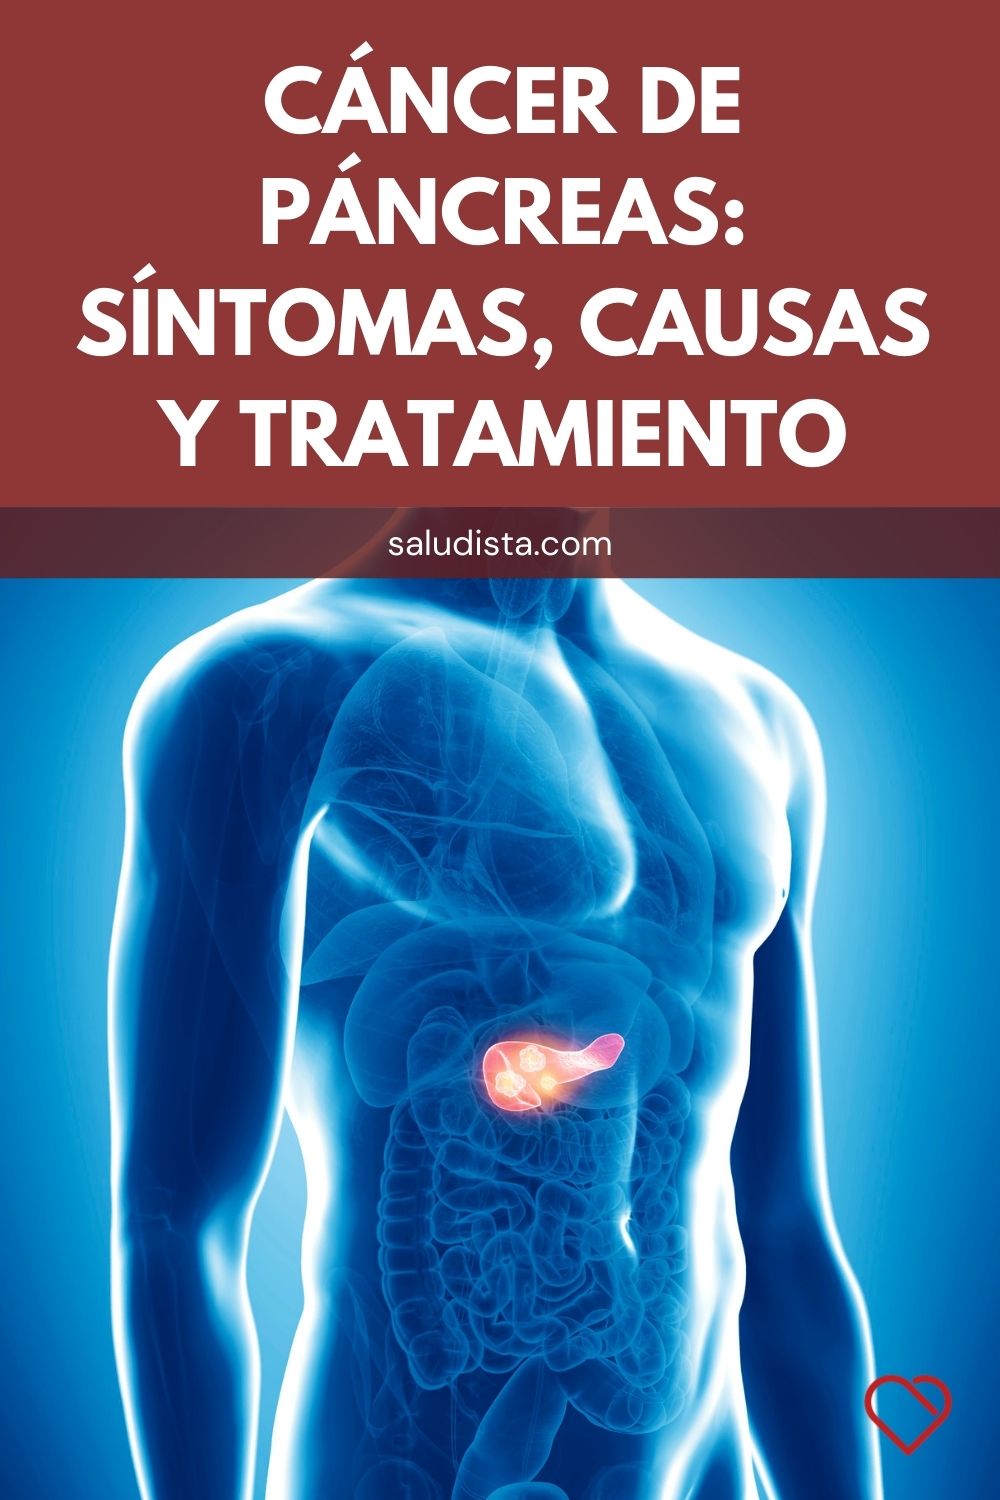 Cáncer de páncreas: Síntomas, causas y tratamiento